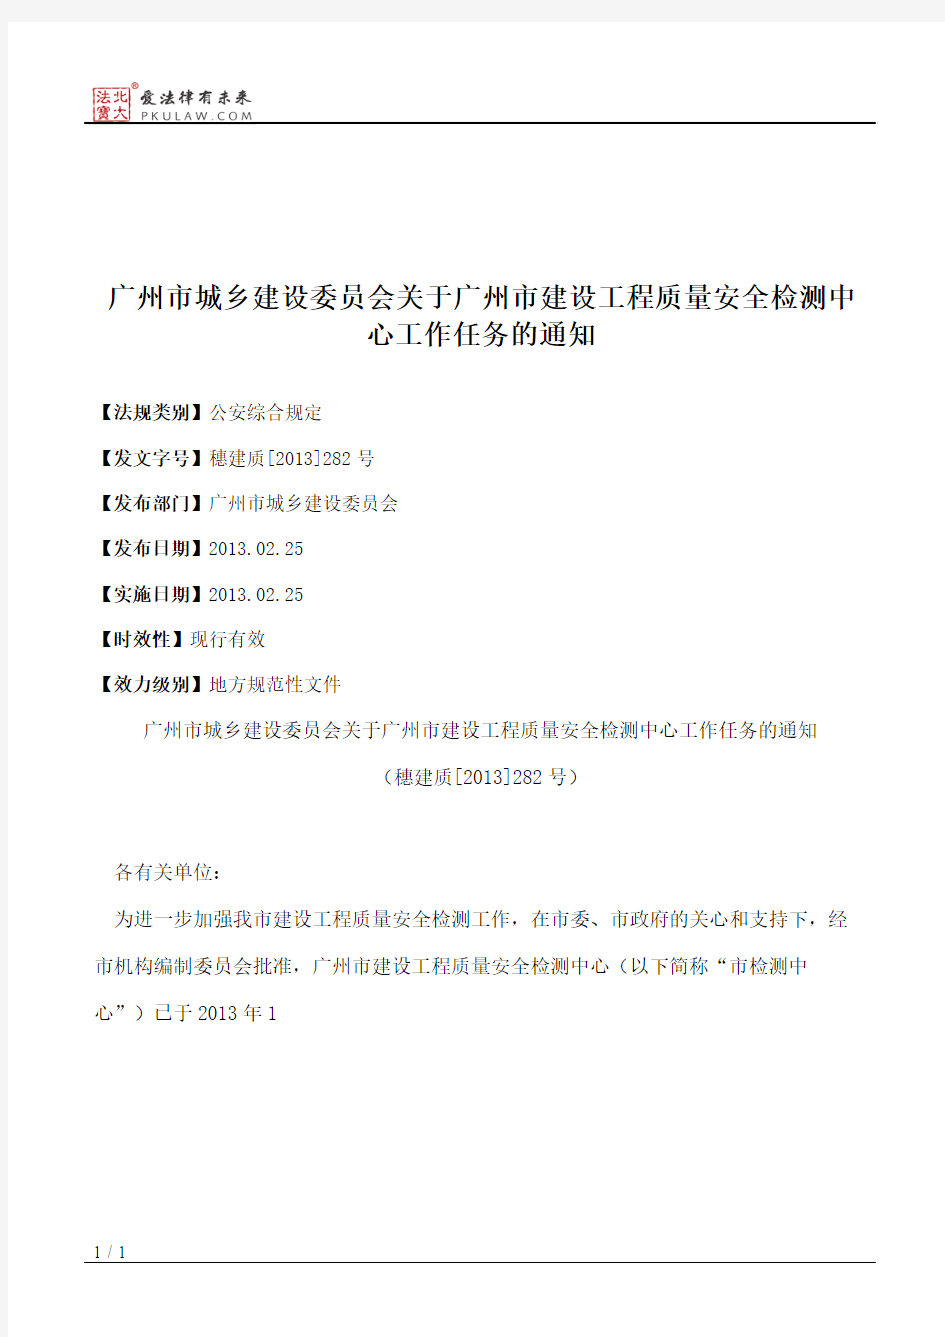 广州市城乡建设委员会关于广州市建设工程质量安全检测中心工作任